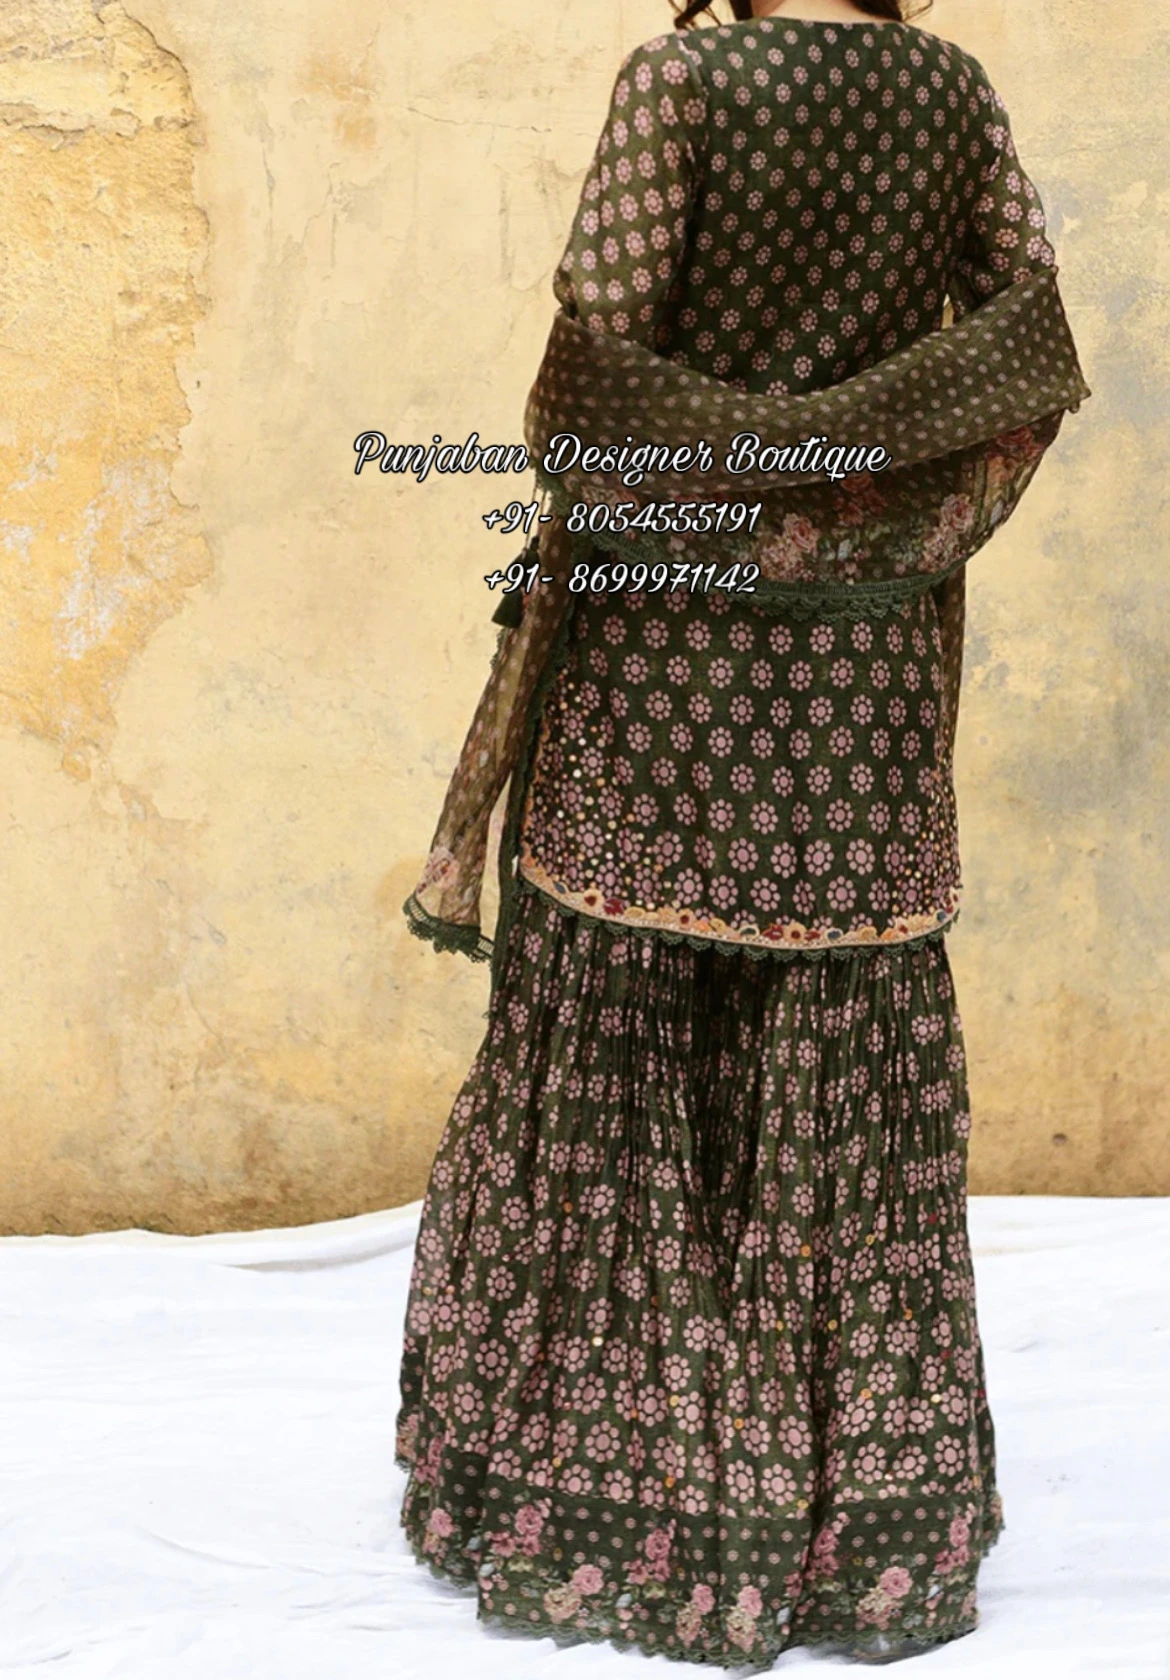 Raksha Bandhan Party Wear Salwar Suit Design For Girls-baongoctrading.com.vn